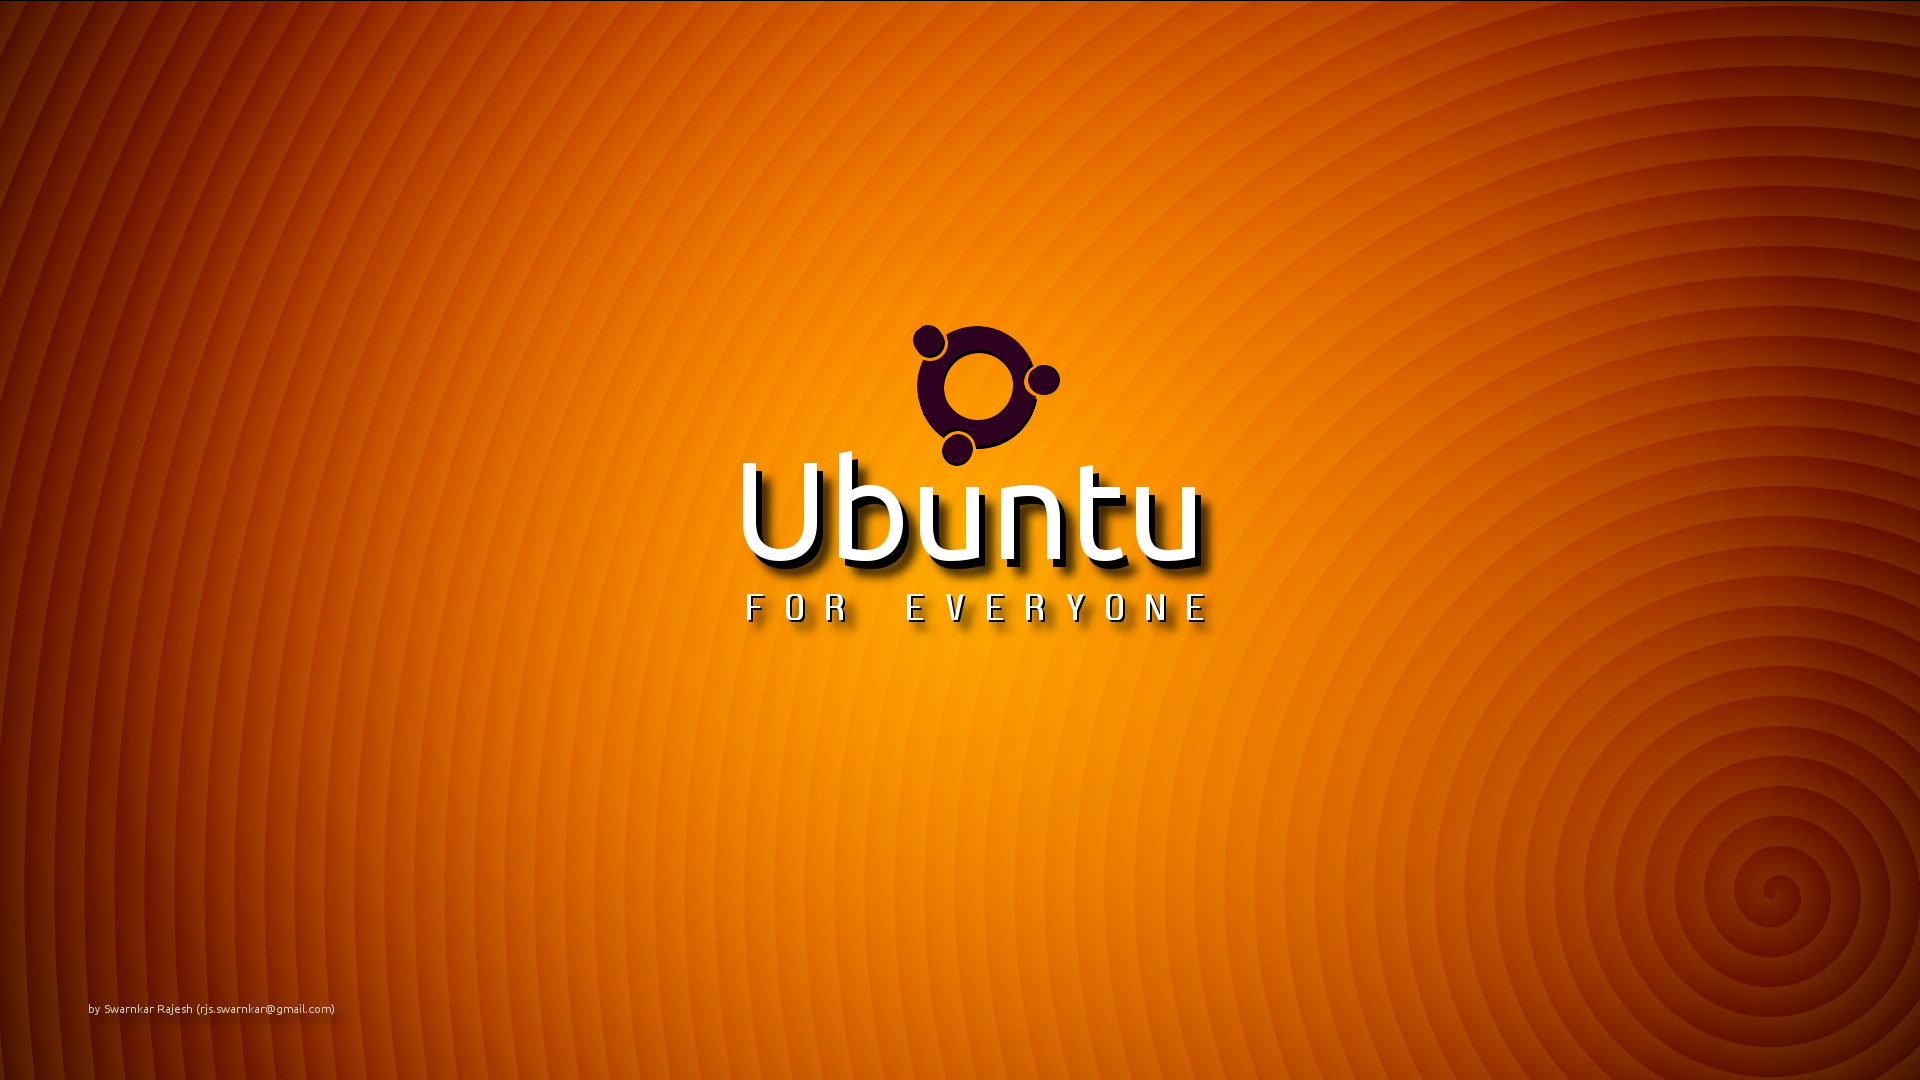 Ubuntu HD Wallpaper by RajeshSwarnkar 1920x1080